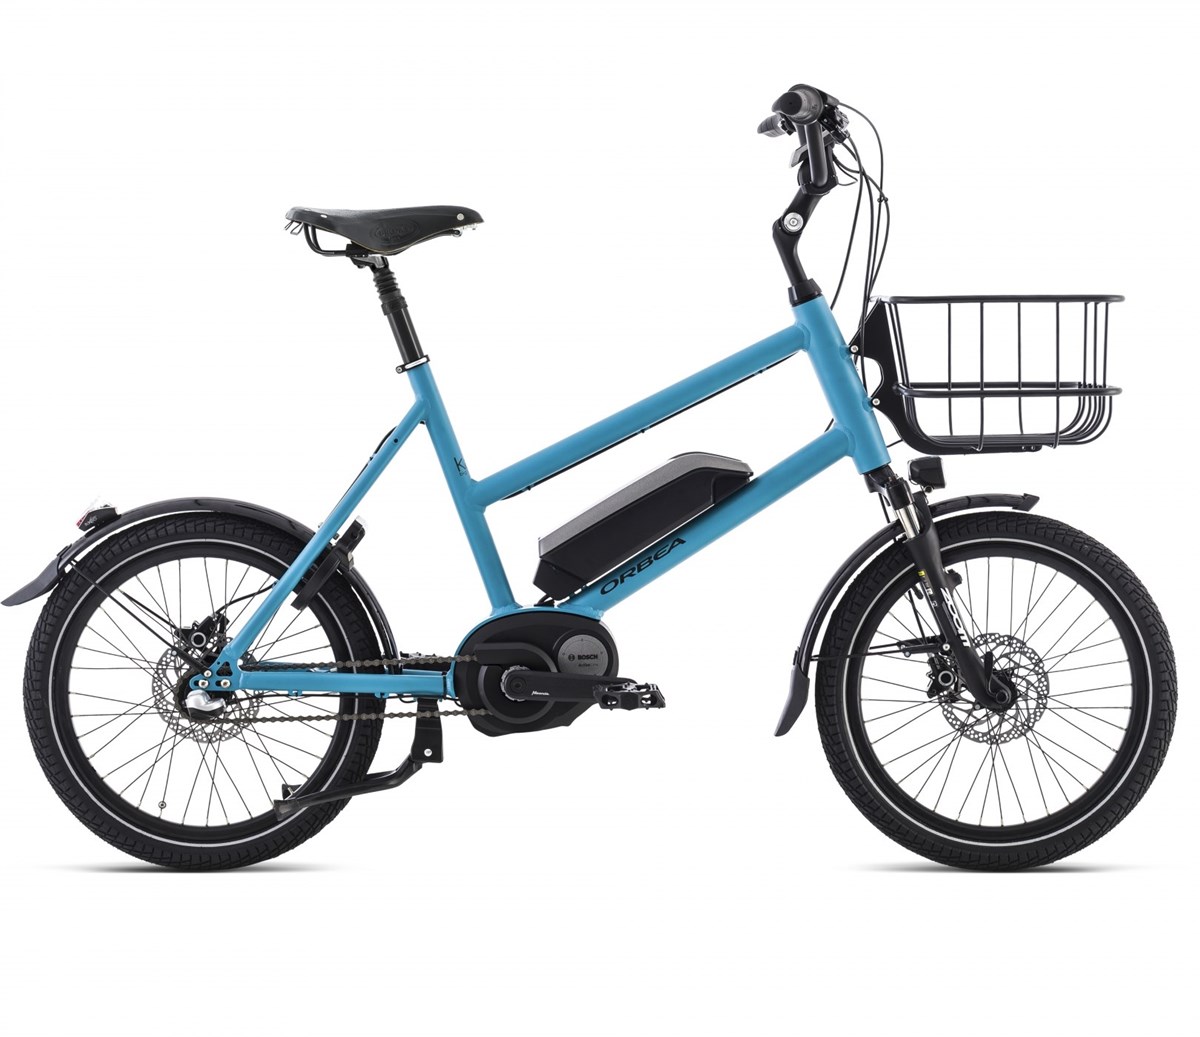 Orbea Katu-E 10A 2016 - Electric Bike product image